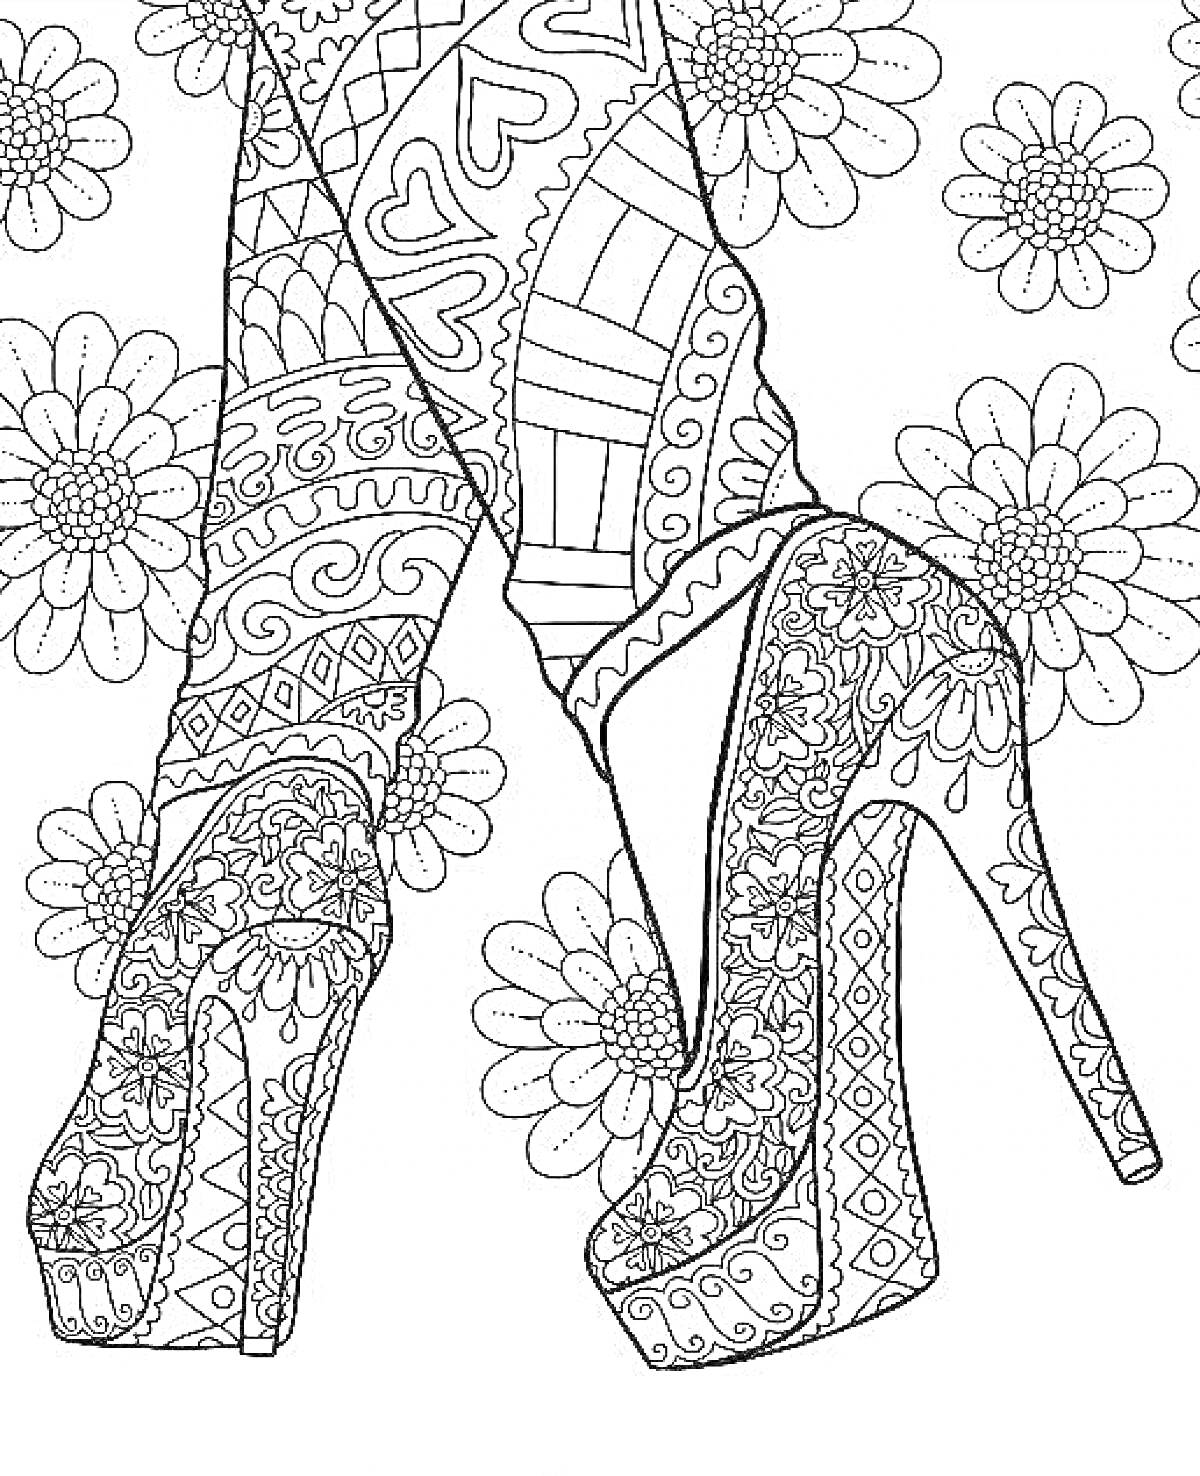 Высокие каблуки с узорами и леггинсы с рисунками, на фоне цветов